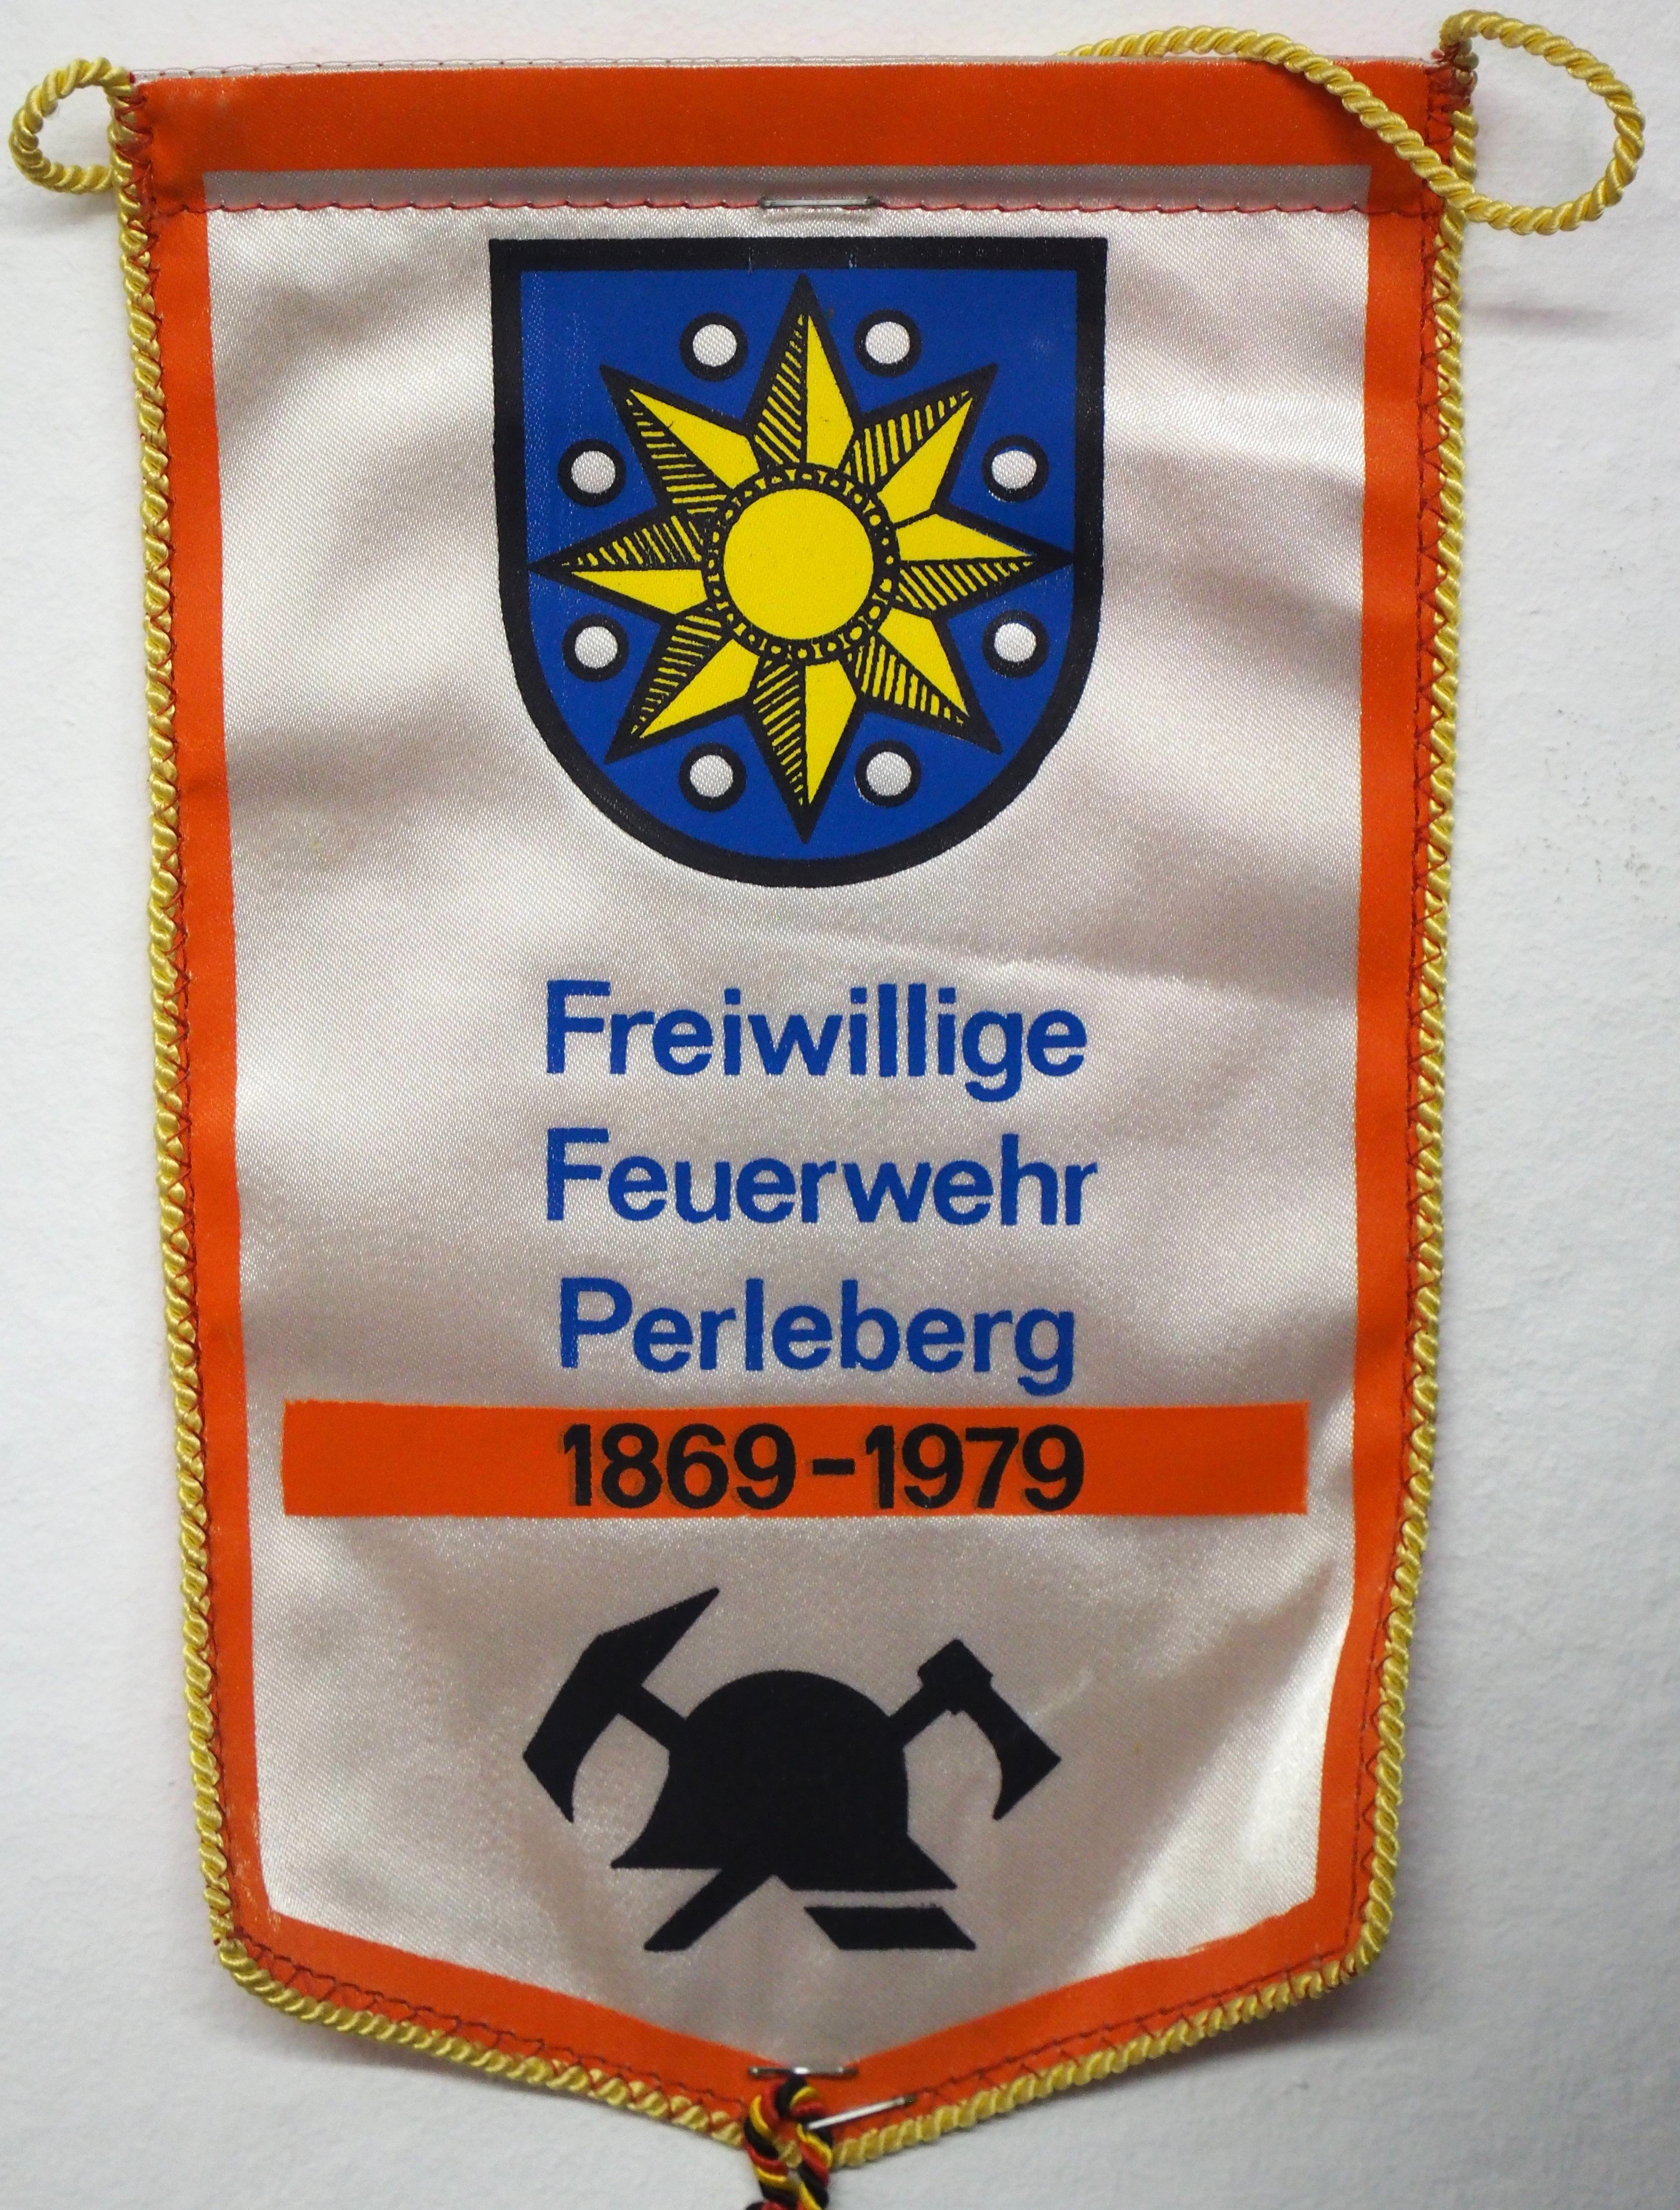 Wimpel der Freiwilligen Feuerwehr Perleberg (DDR Geschichtsmuseum im Dokumentationszentrum Perleberg CC BY-SA)